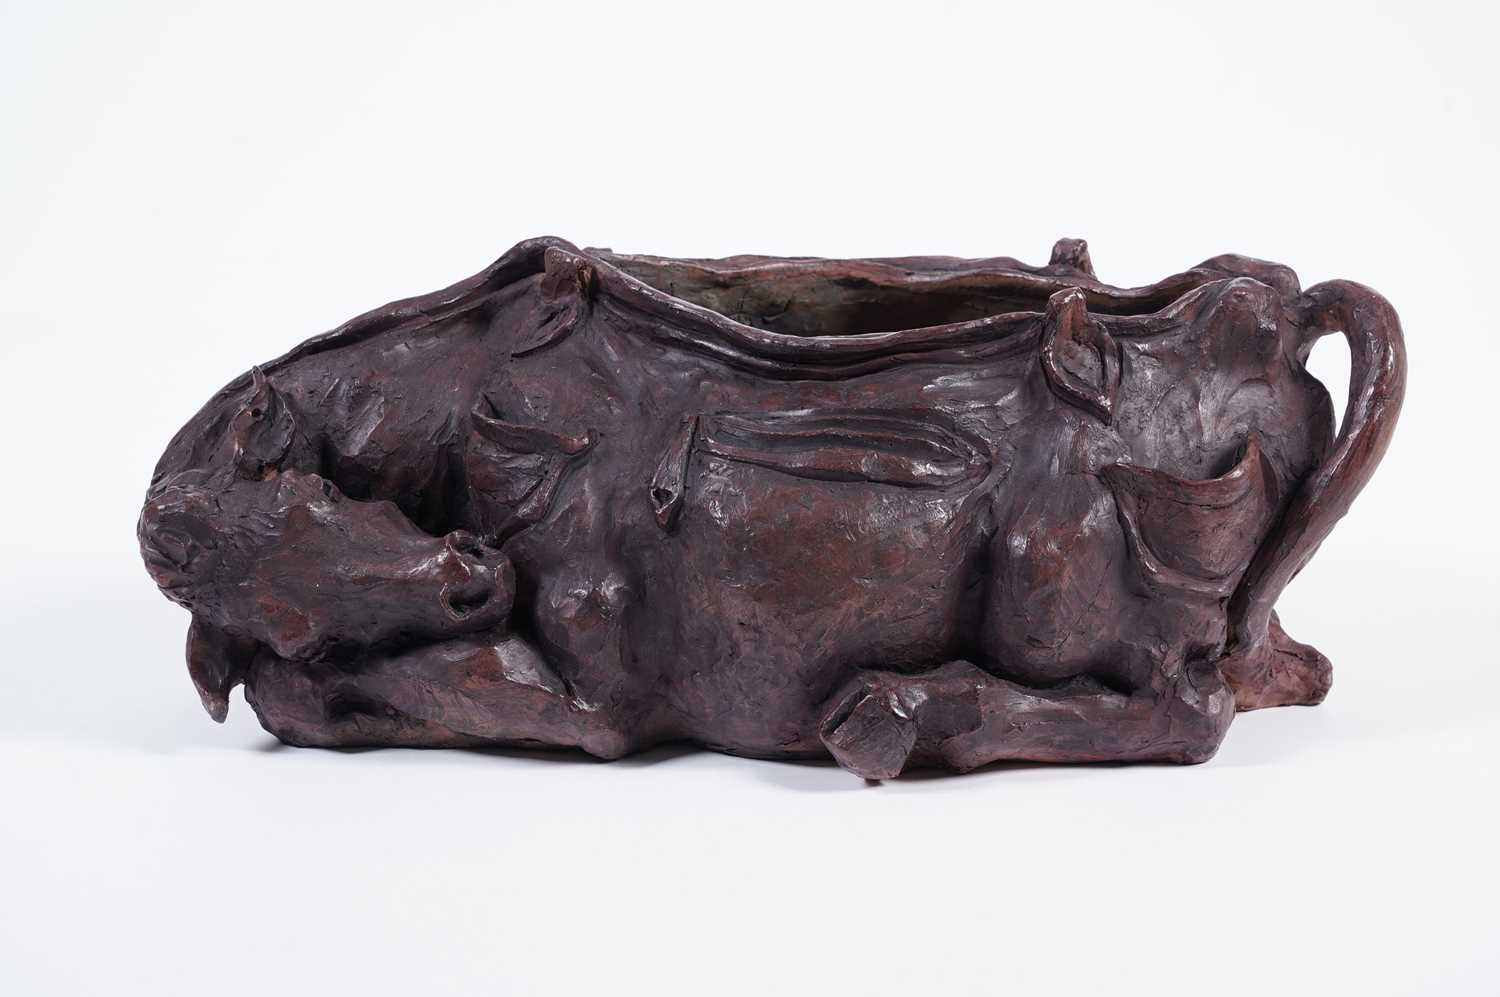 Lisa Delarny - Cowskin Handbag | clay sculpture